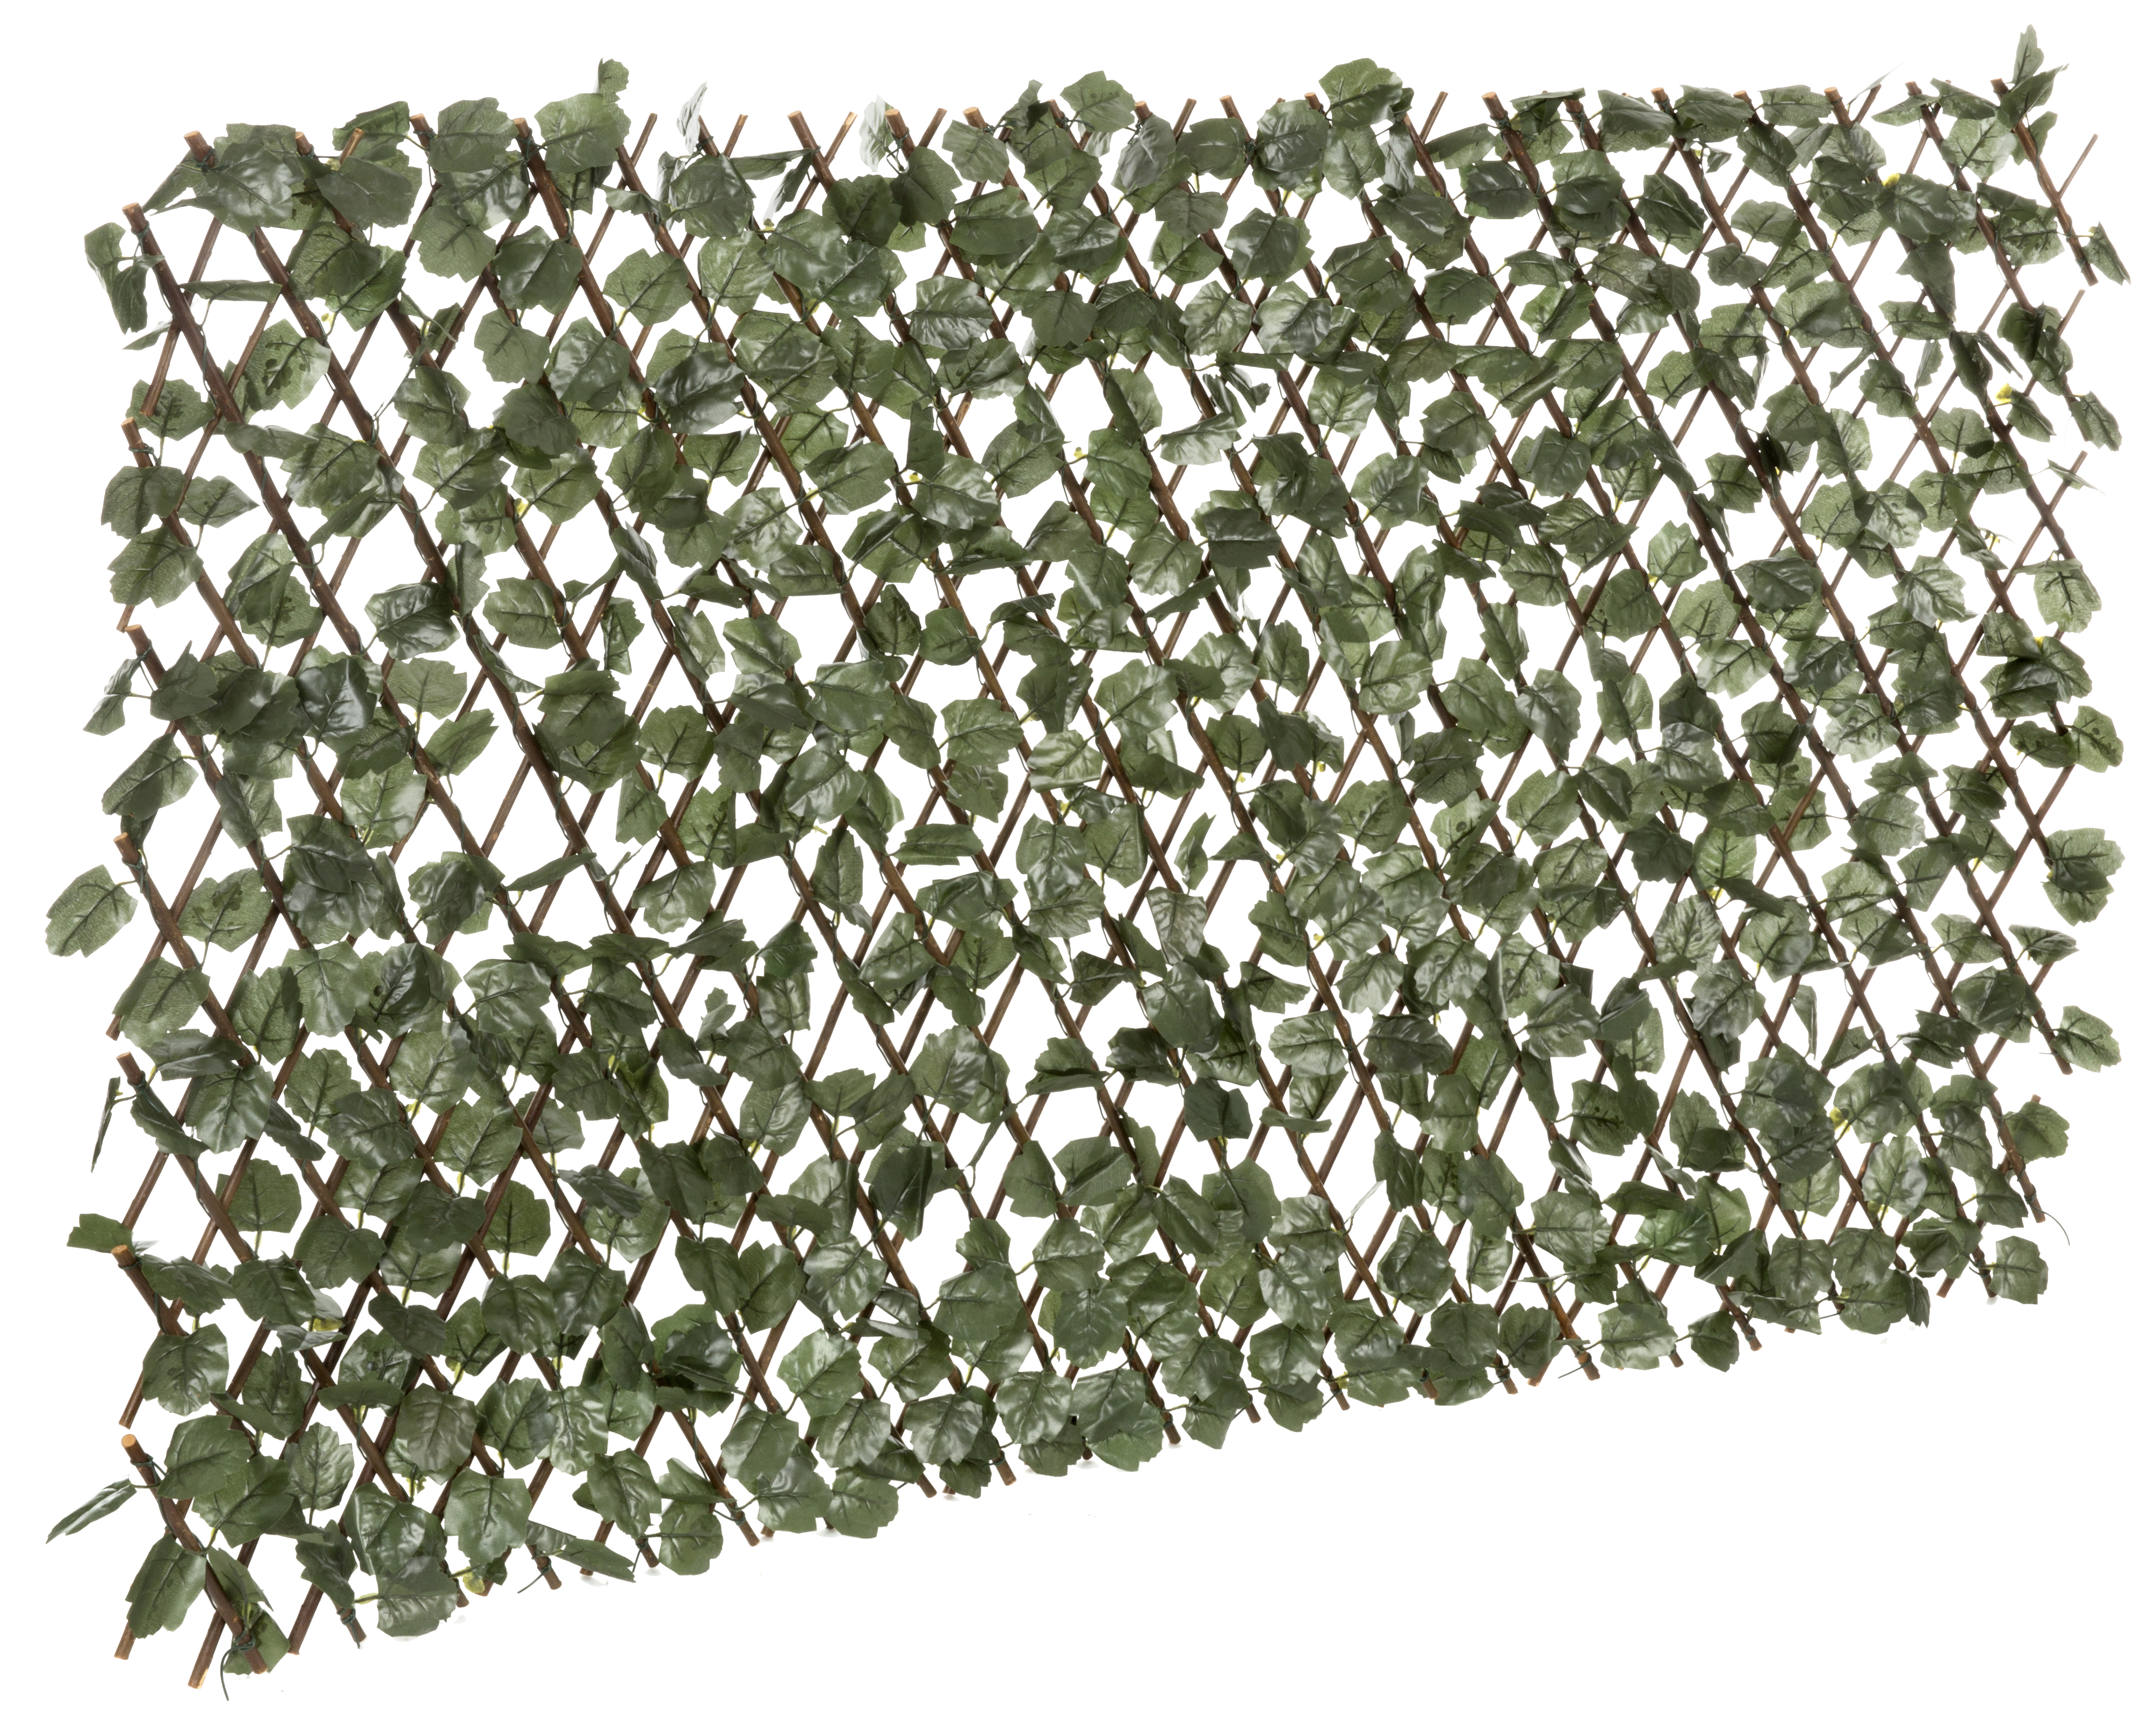 Celosía extensible de mimbre de 2x1m. Celosias decorativas terrazas